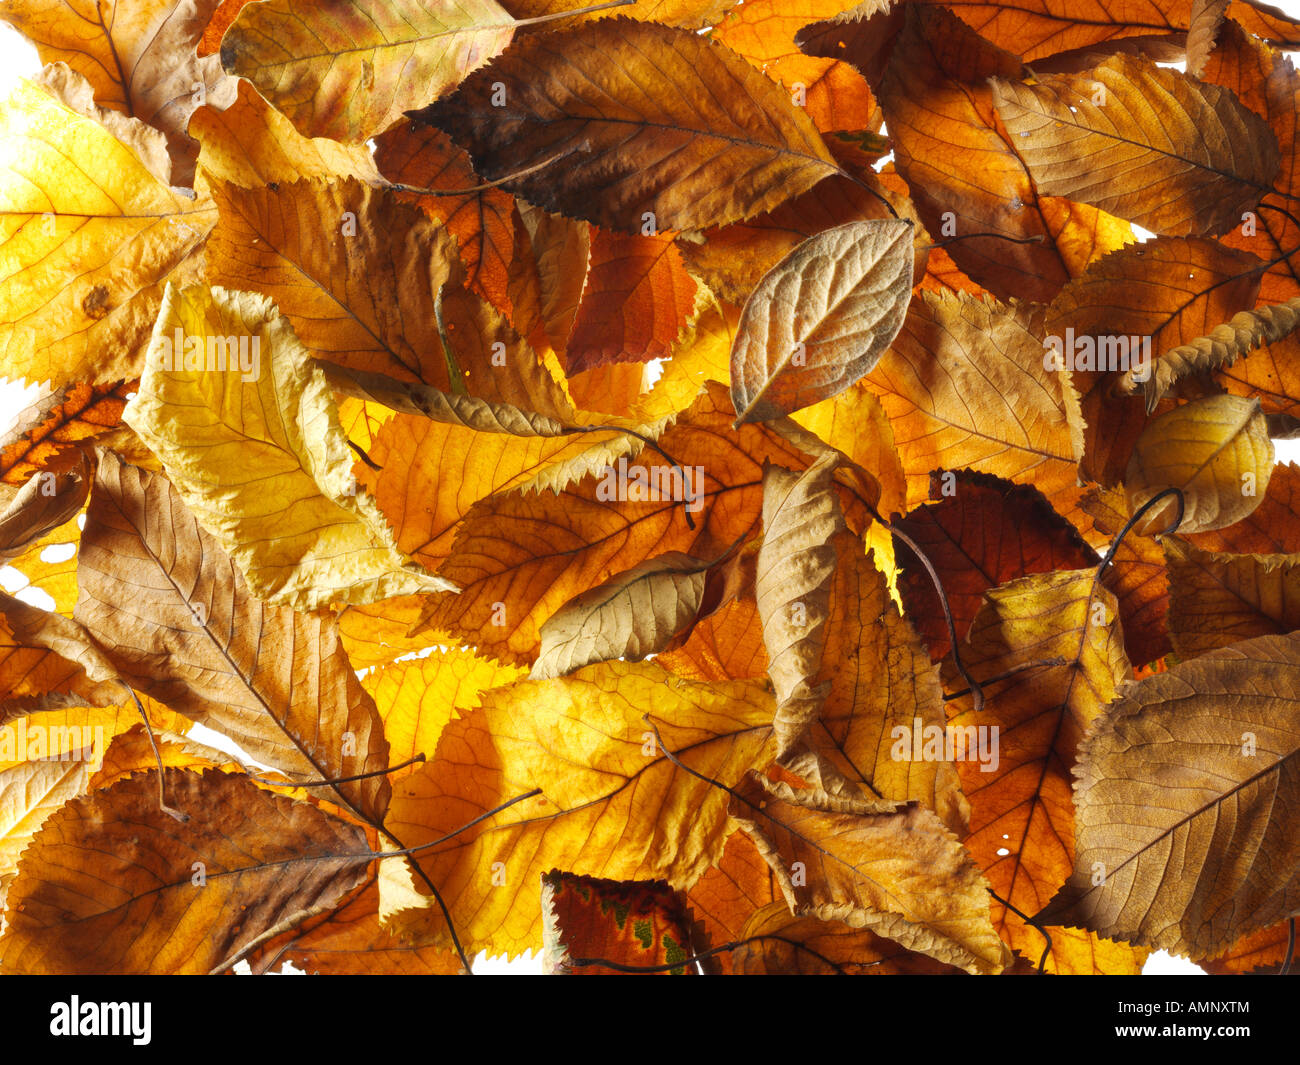 Gefallen, Herbst, die Blätter fallen übereinander gestapelt. Getrocknete bunte Blätter mit den warmen herbstlichen Farben und Texturen der Fall. Stockfoto